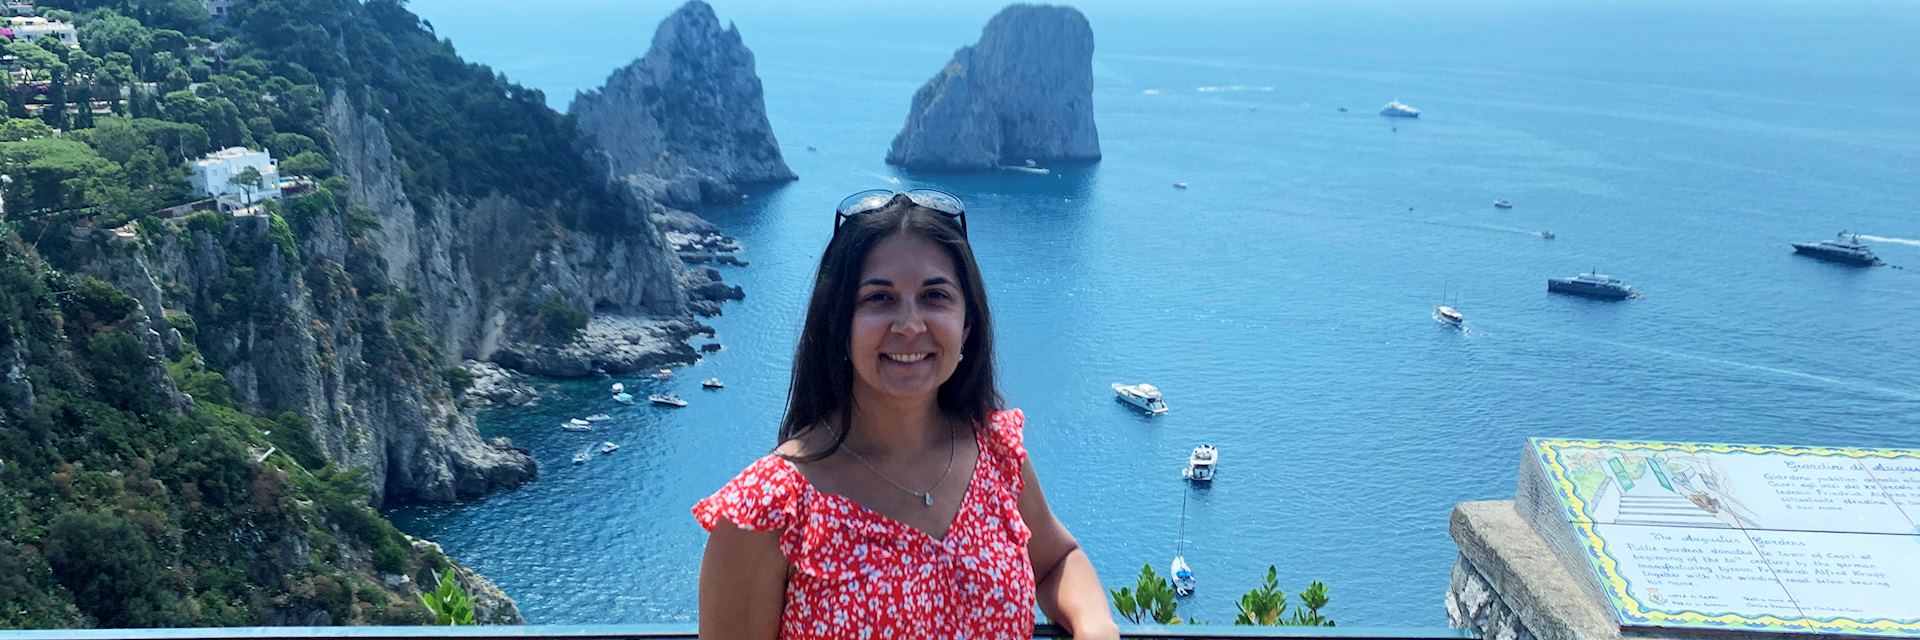 Brianna at the Capri rocks, Italy